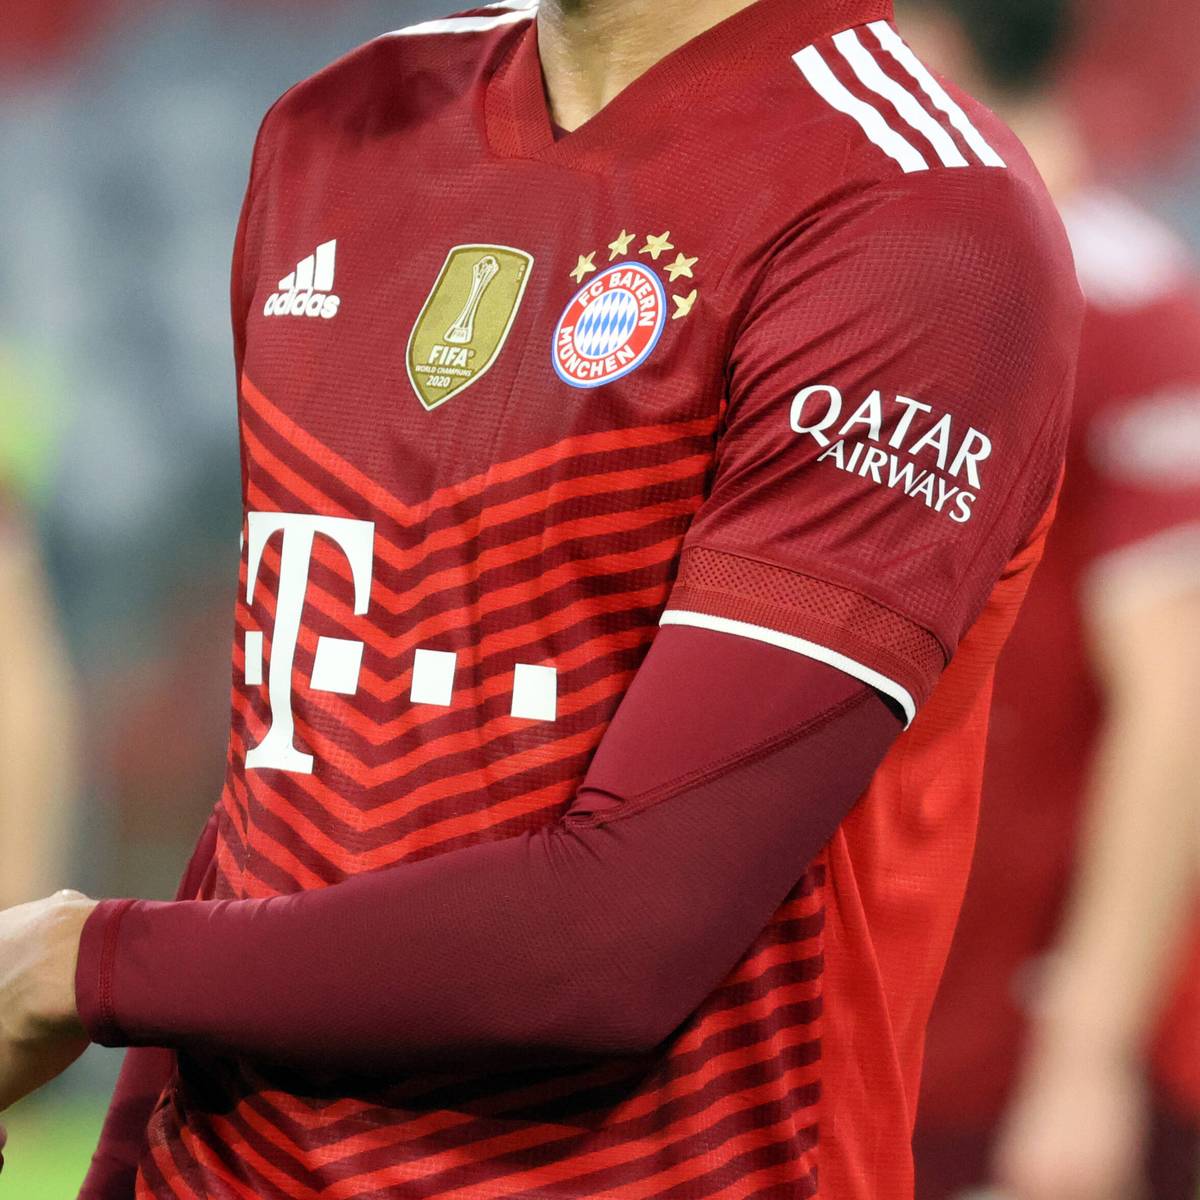 Bayern München wird nach der Weltmeisterschaft in Katar das umstrittene Sponsoring mit der Fluglinie Qatar Airways auf den Prüfstand stellen.